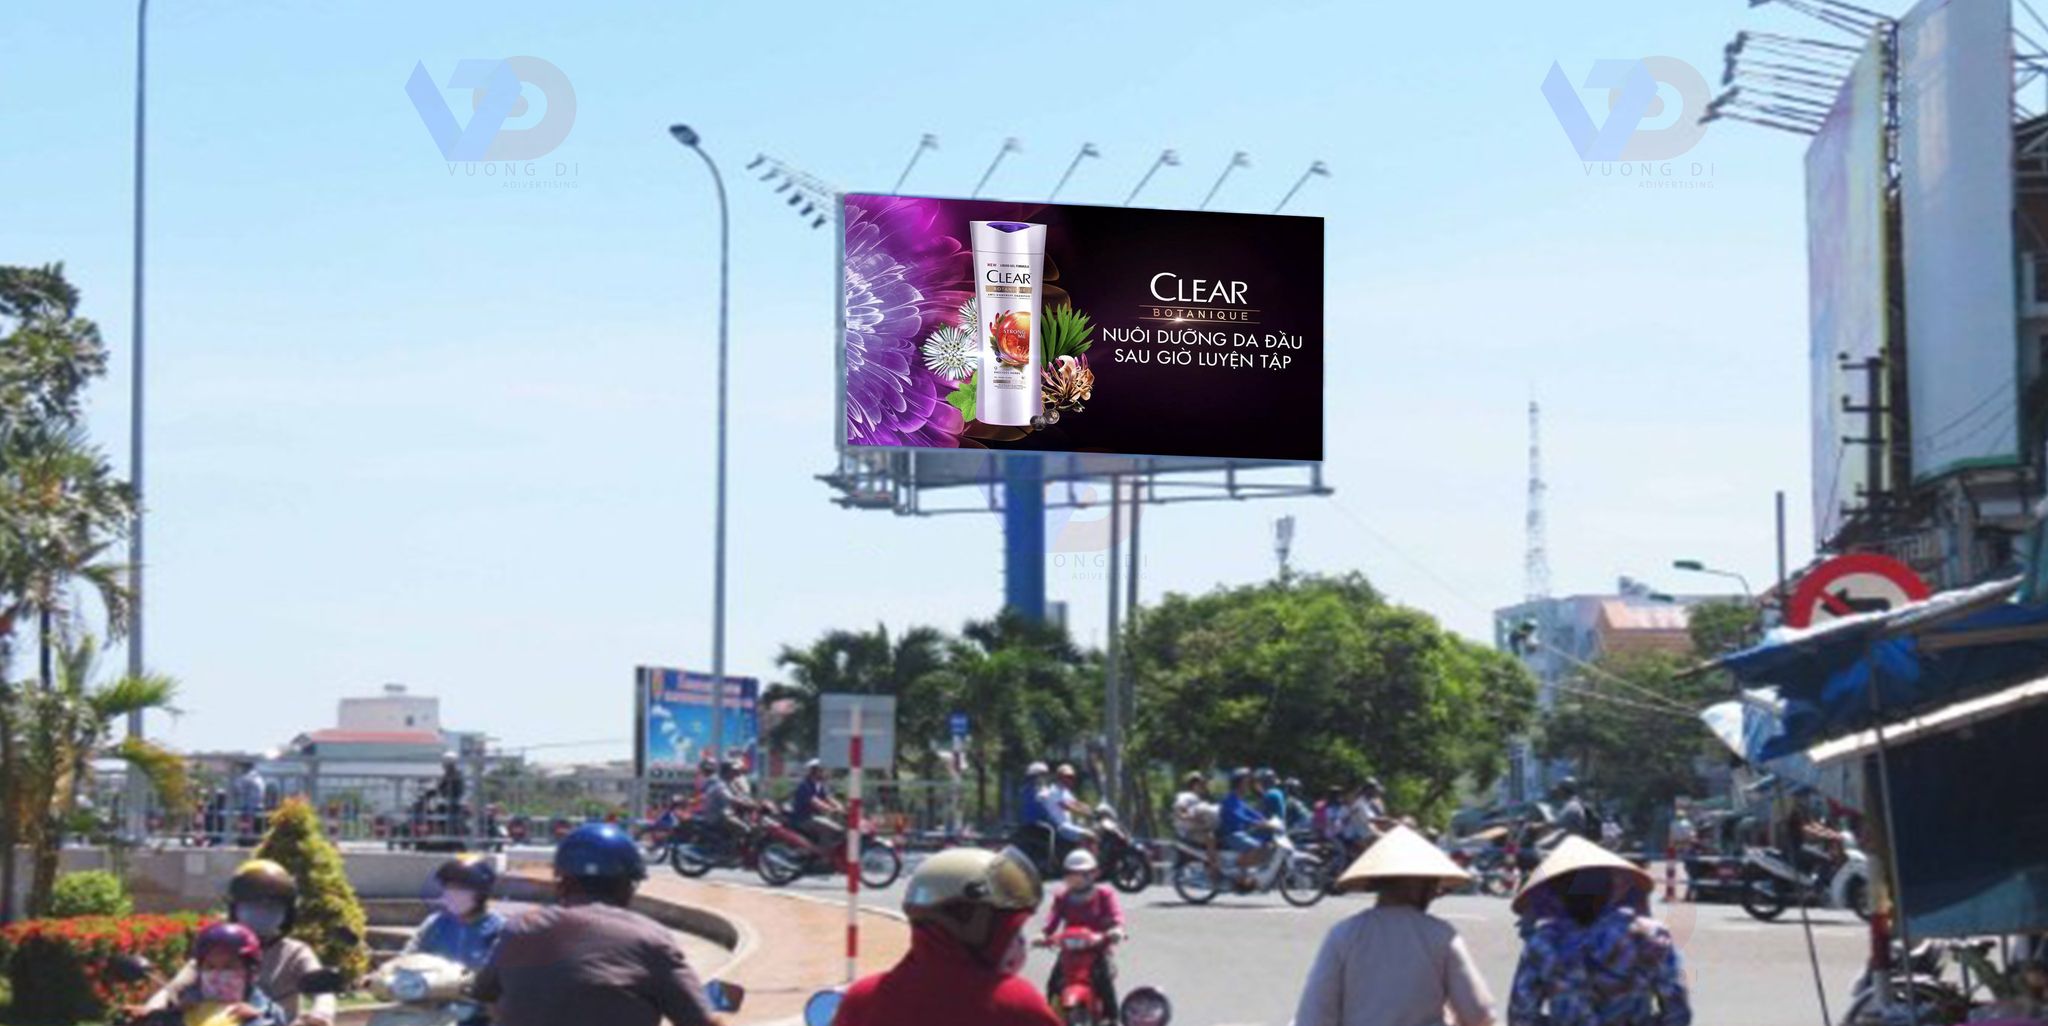 Bảng quảng cáo tại Ngã tư Trần Hưng Đạo - Hoàng Văn Thụ, Quận Ninh Kiều, Cần Thơ